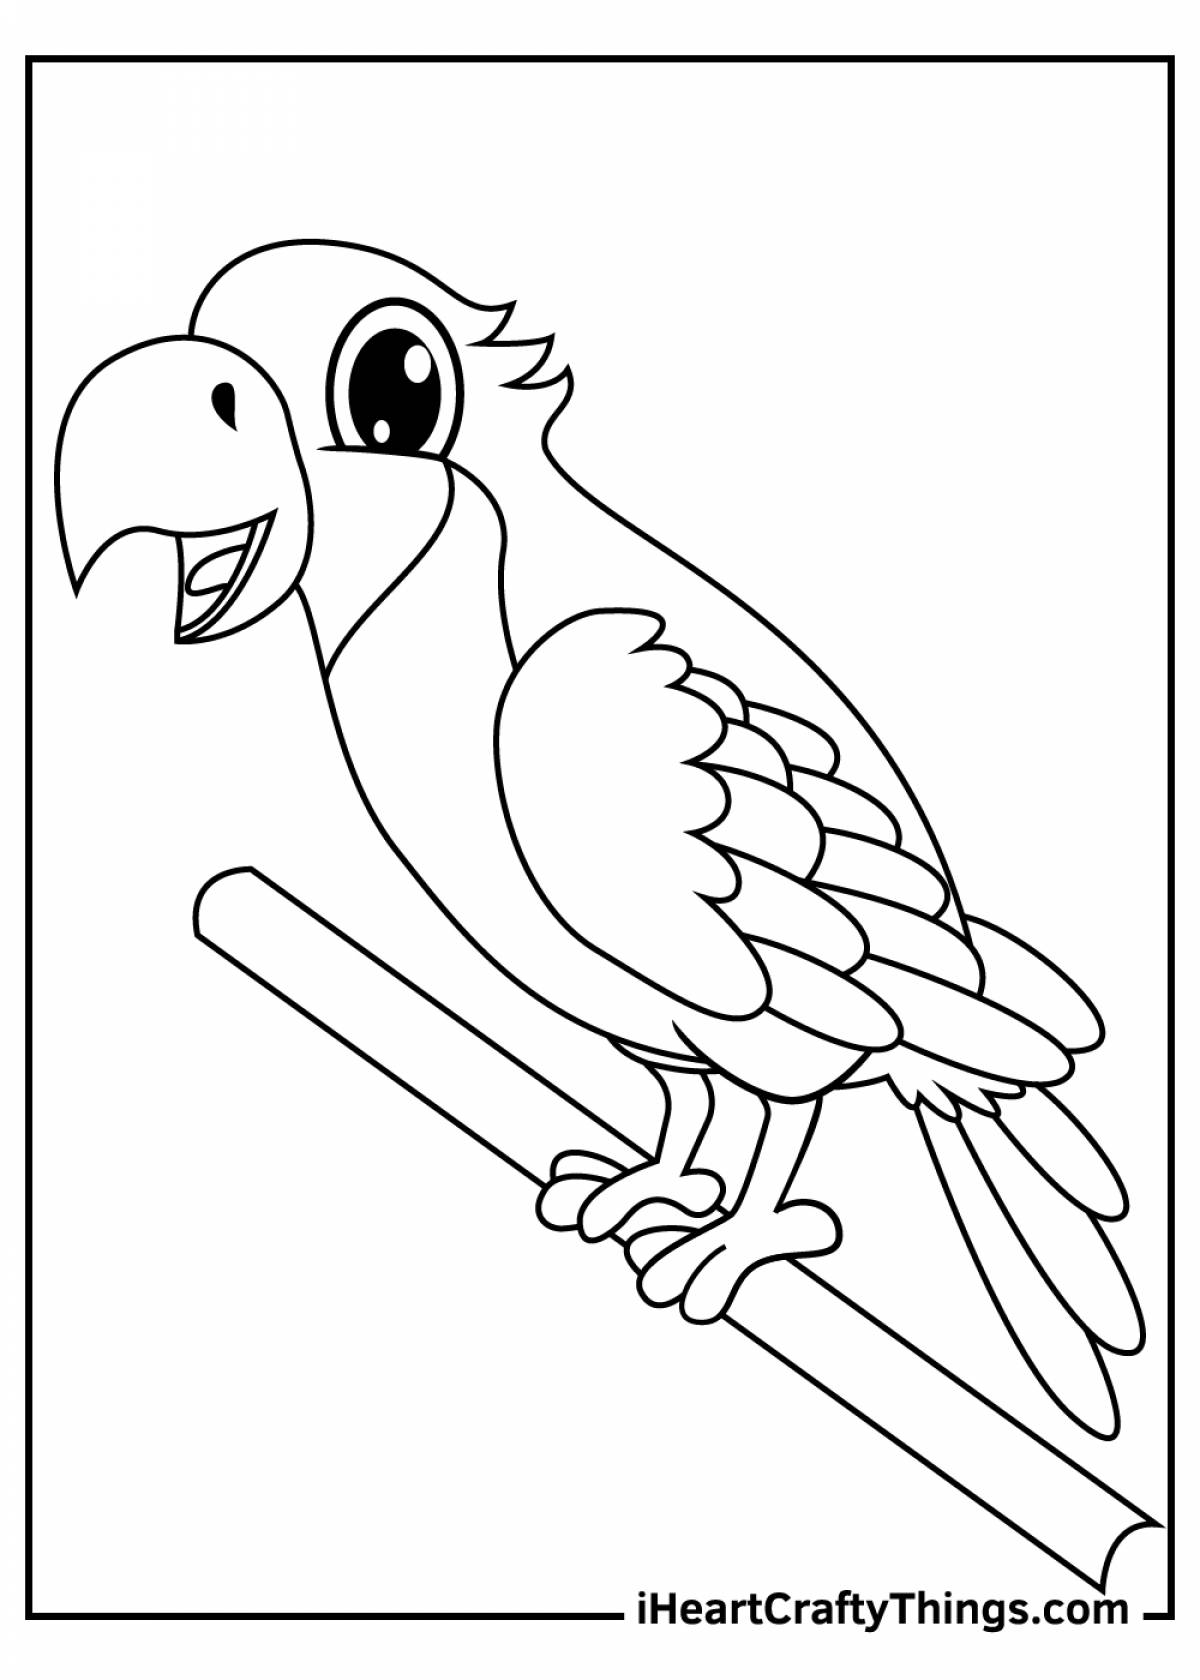 Раскраска попугай для детей 6-7 лет